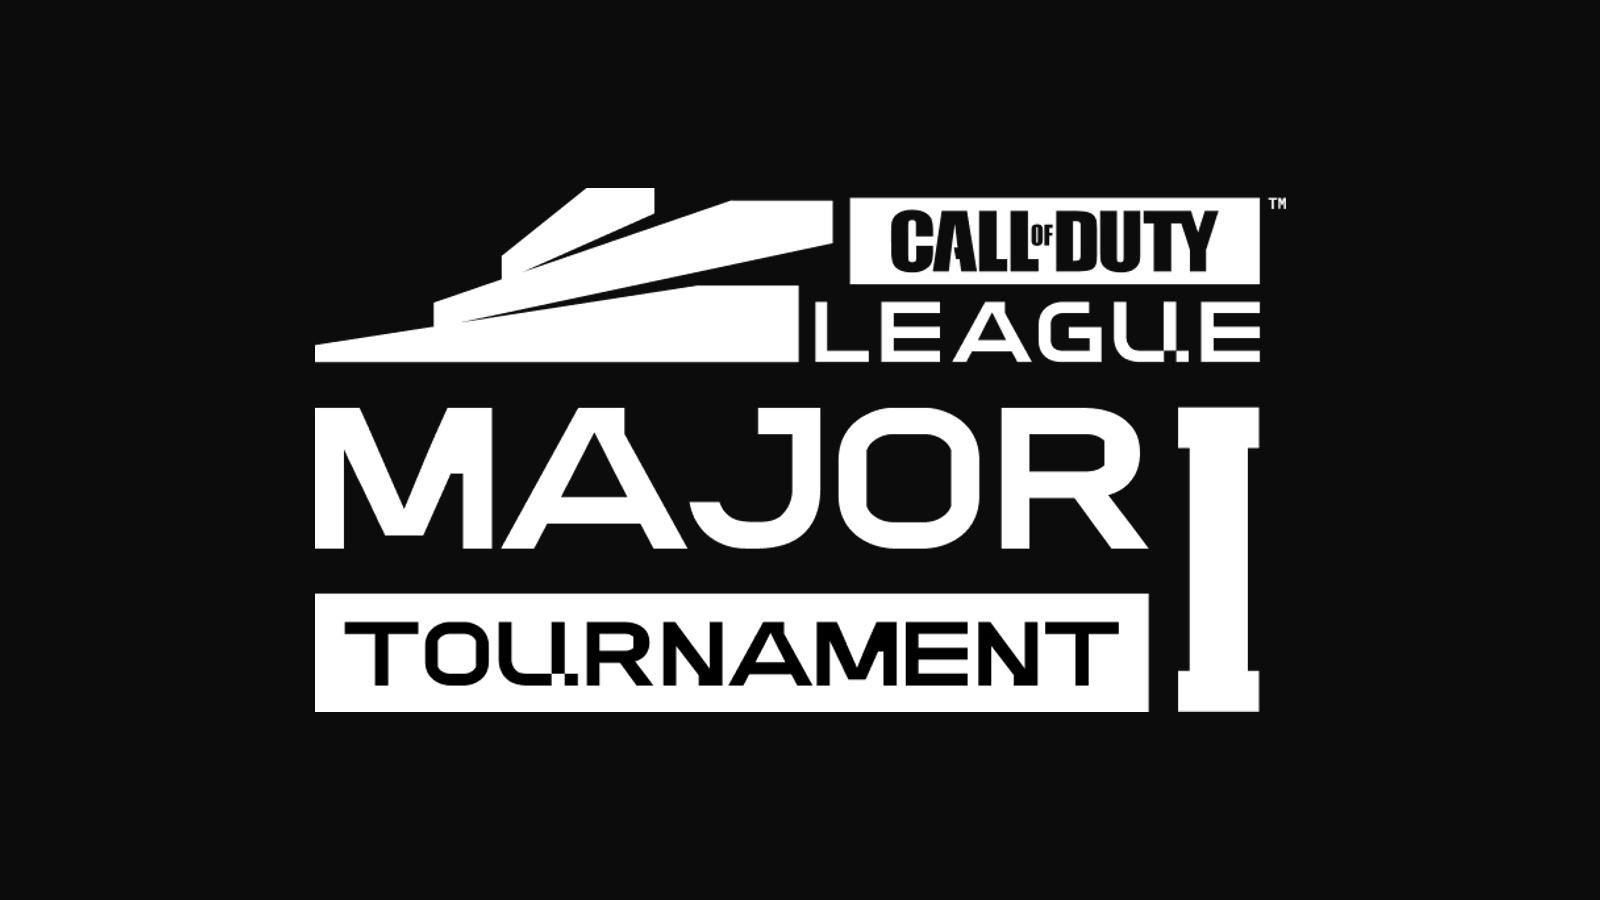 CDL Major 1 tournament logo